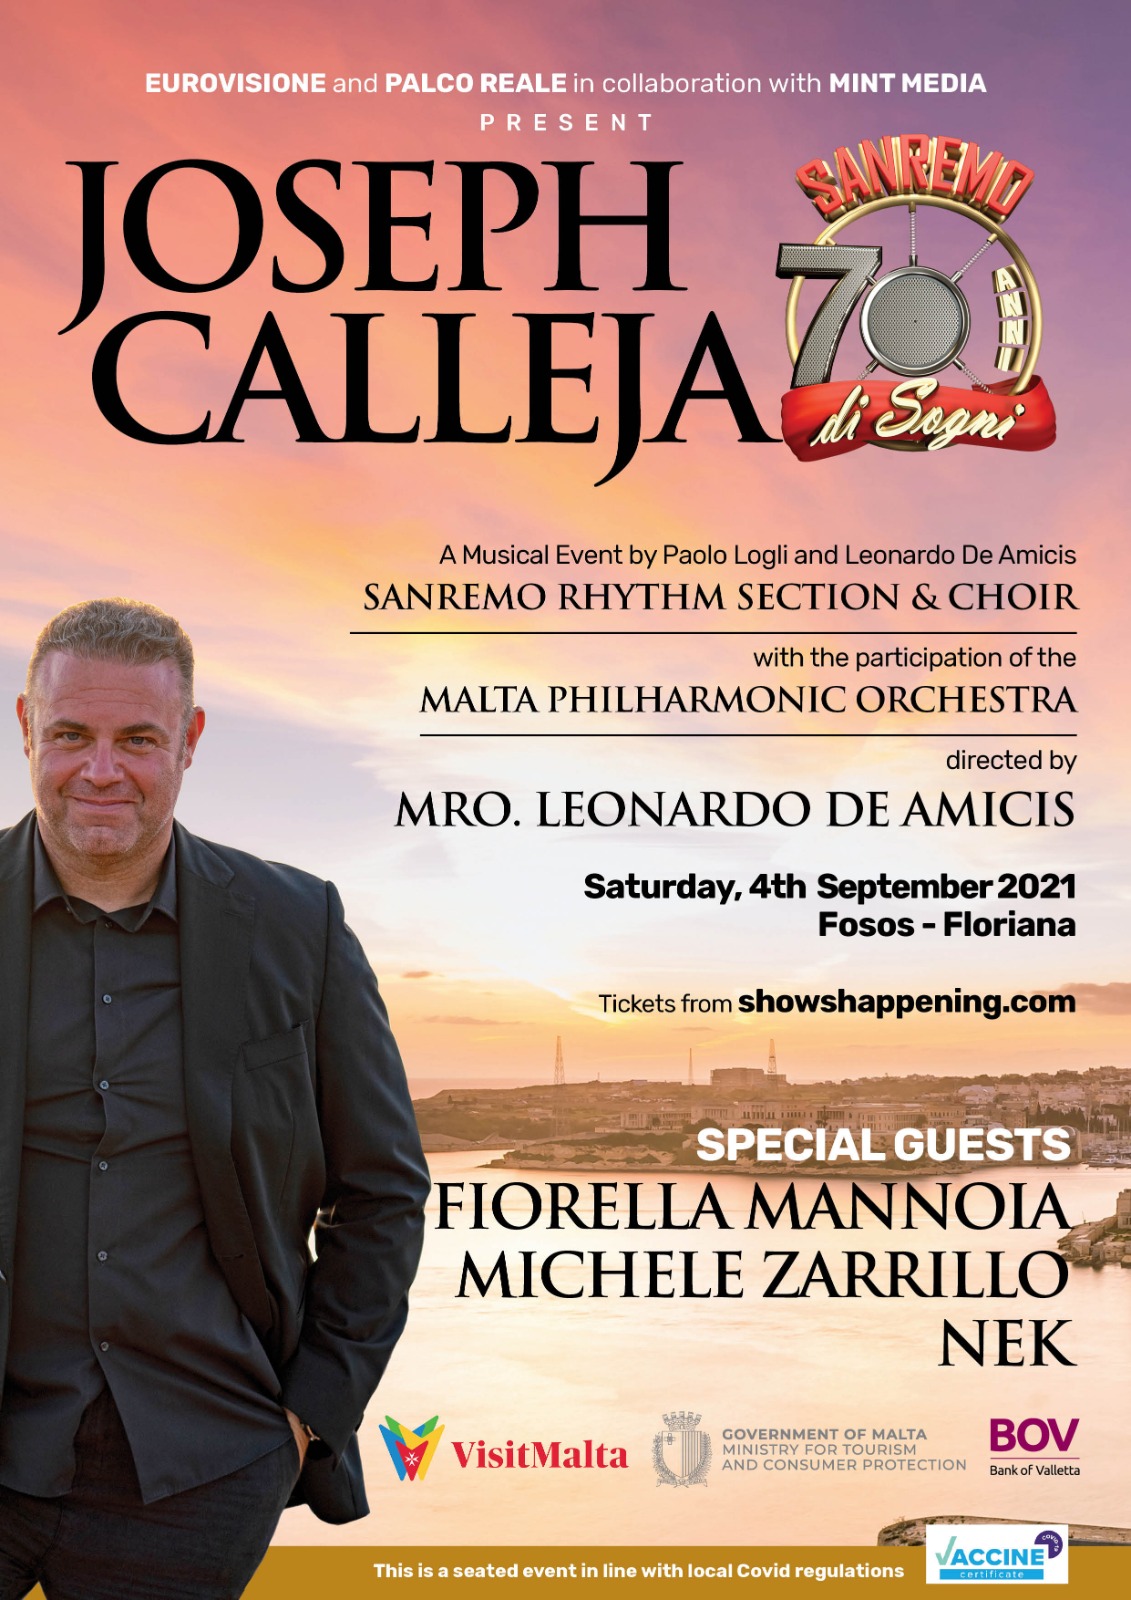 Joseph Calleja 2021 - Sanremo 70 Anni Di Sogni poster